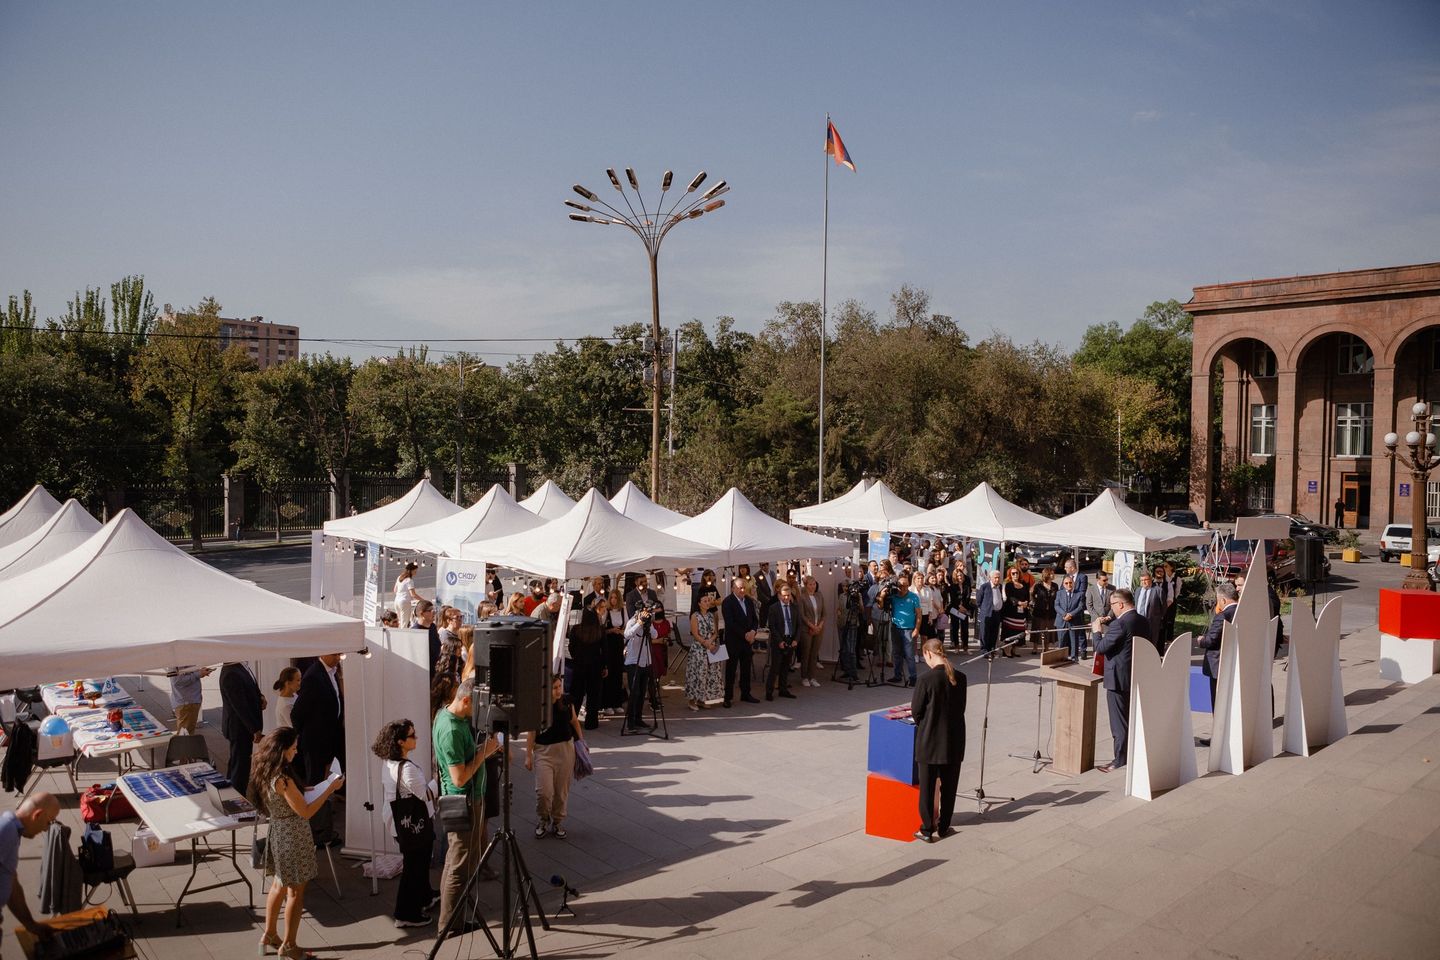 Երևանում տեղի ունեցավ ռուսական բուհերի կրթական ցուցահանդեսի հանդիսավոր բացումը